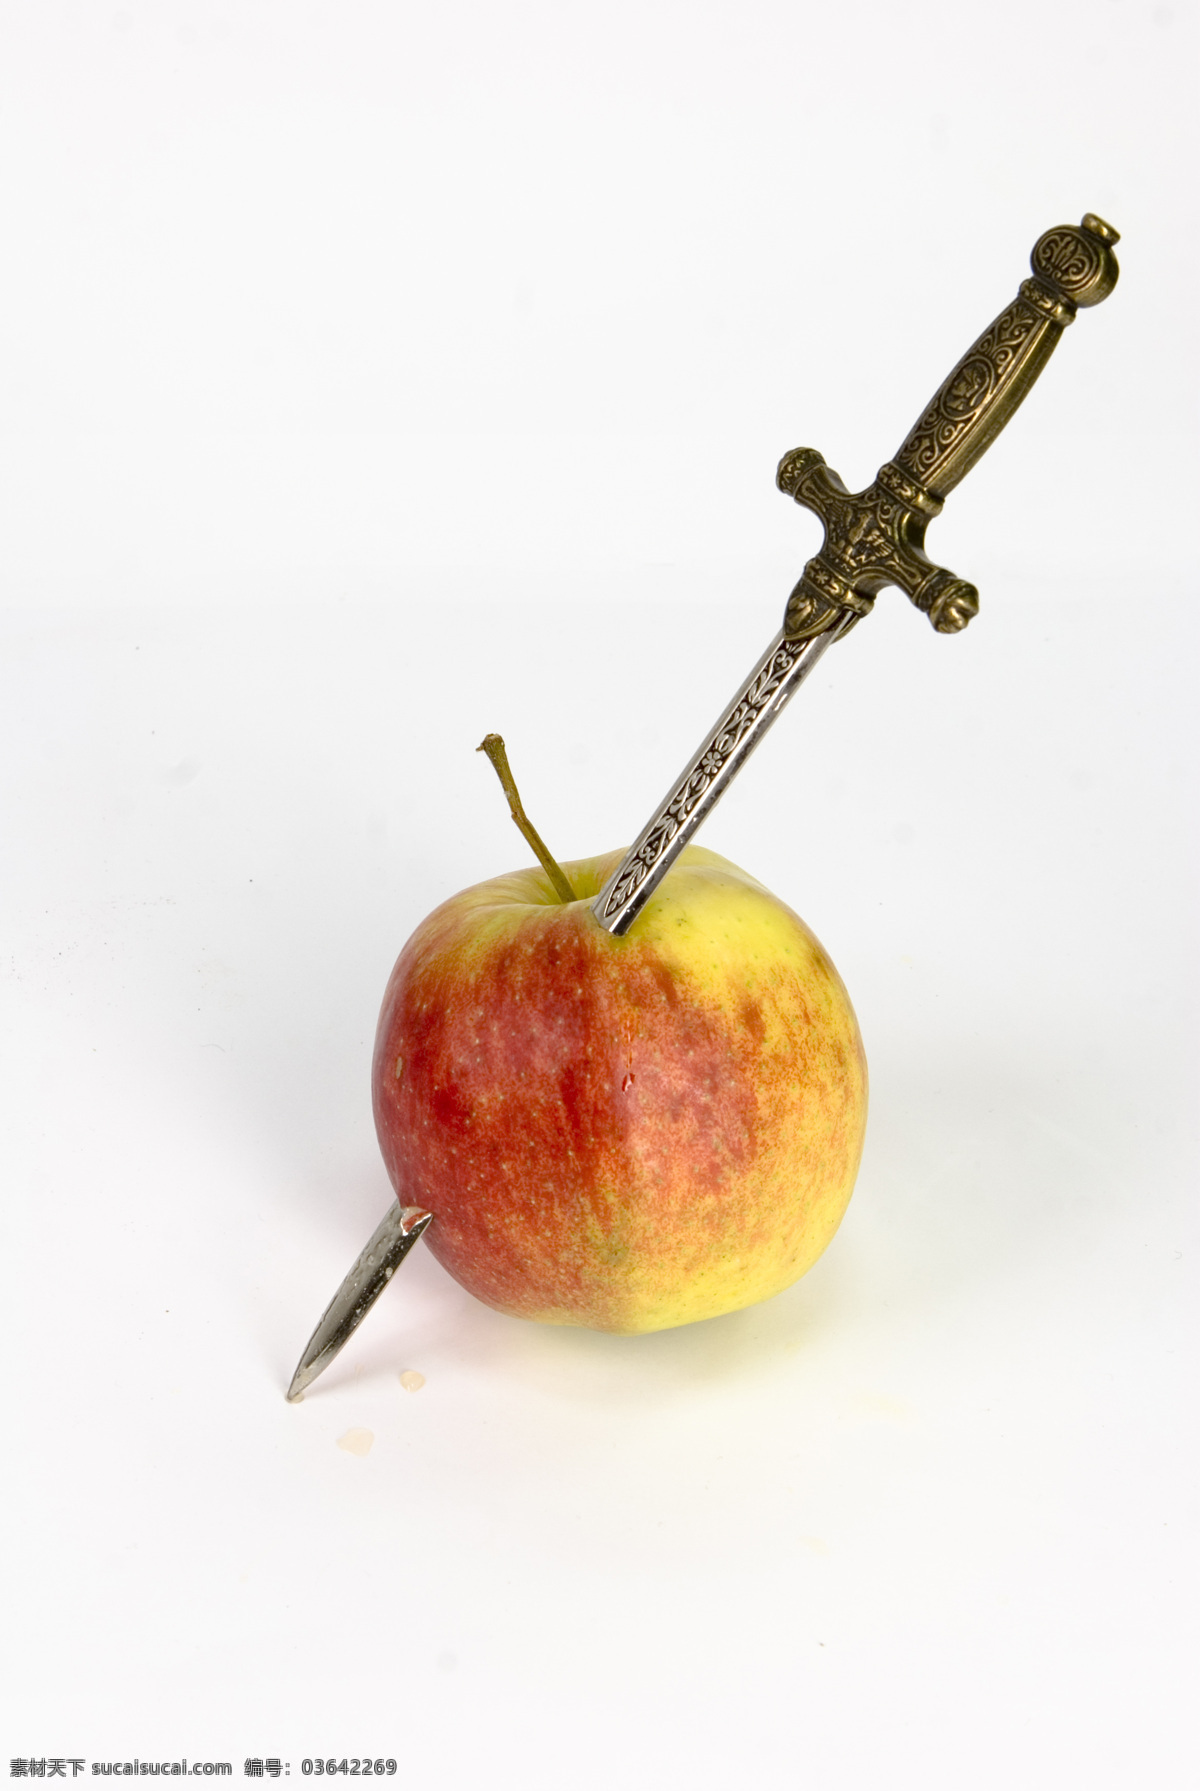 被穿透的苹果 高清水果 水果素材 创意水果 苹果 剑 水果 生物世界